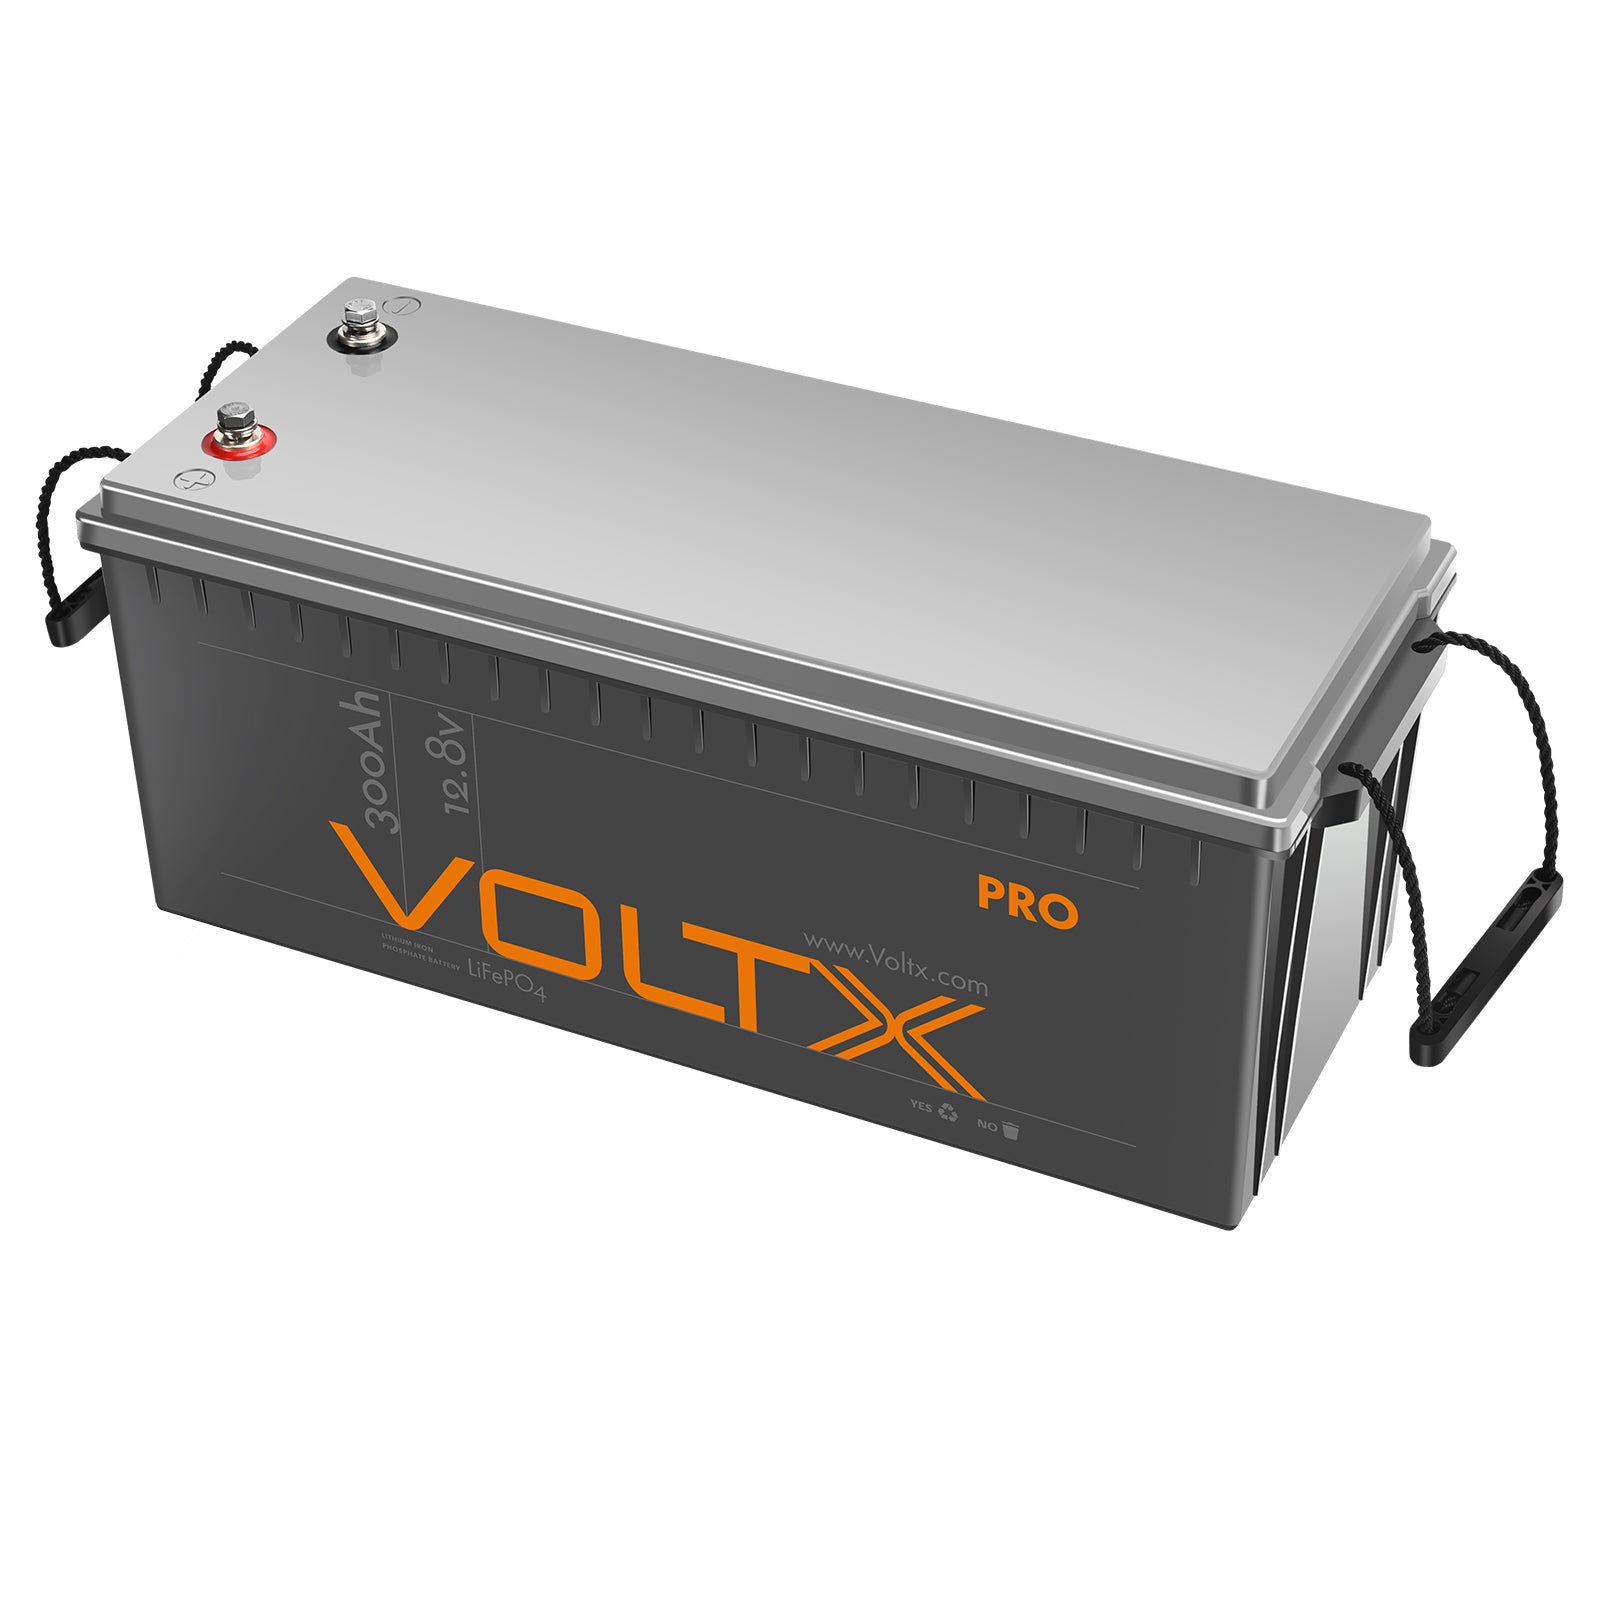 VoltX 12V 300Ah Pro